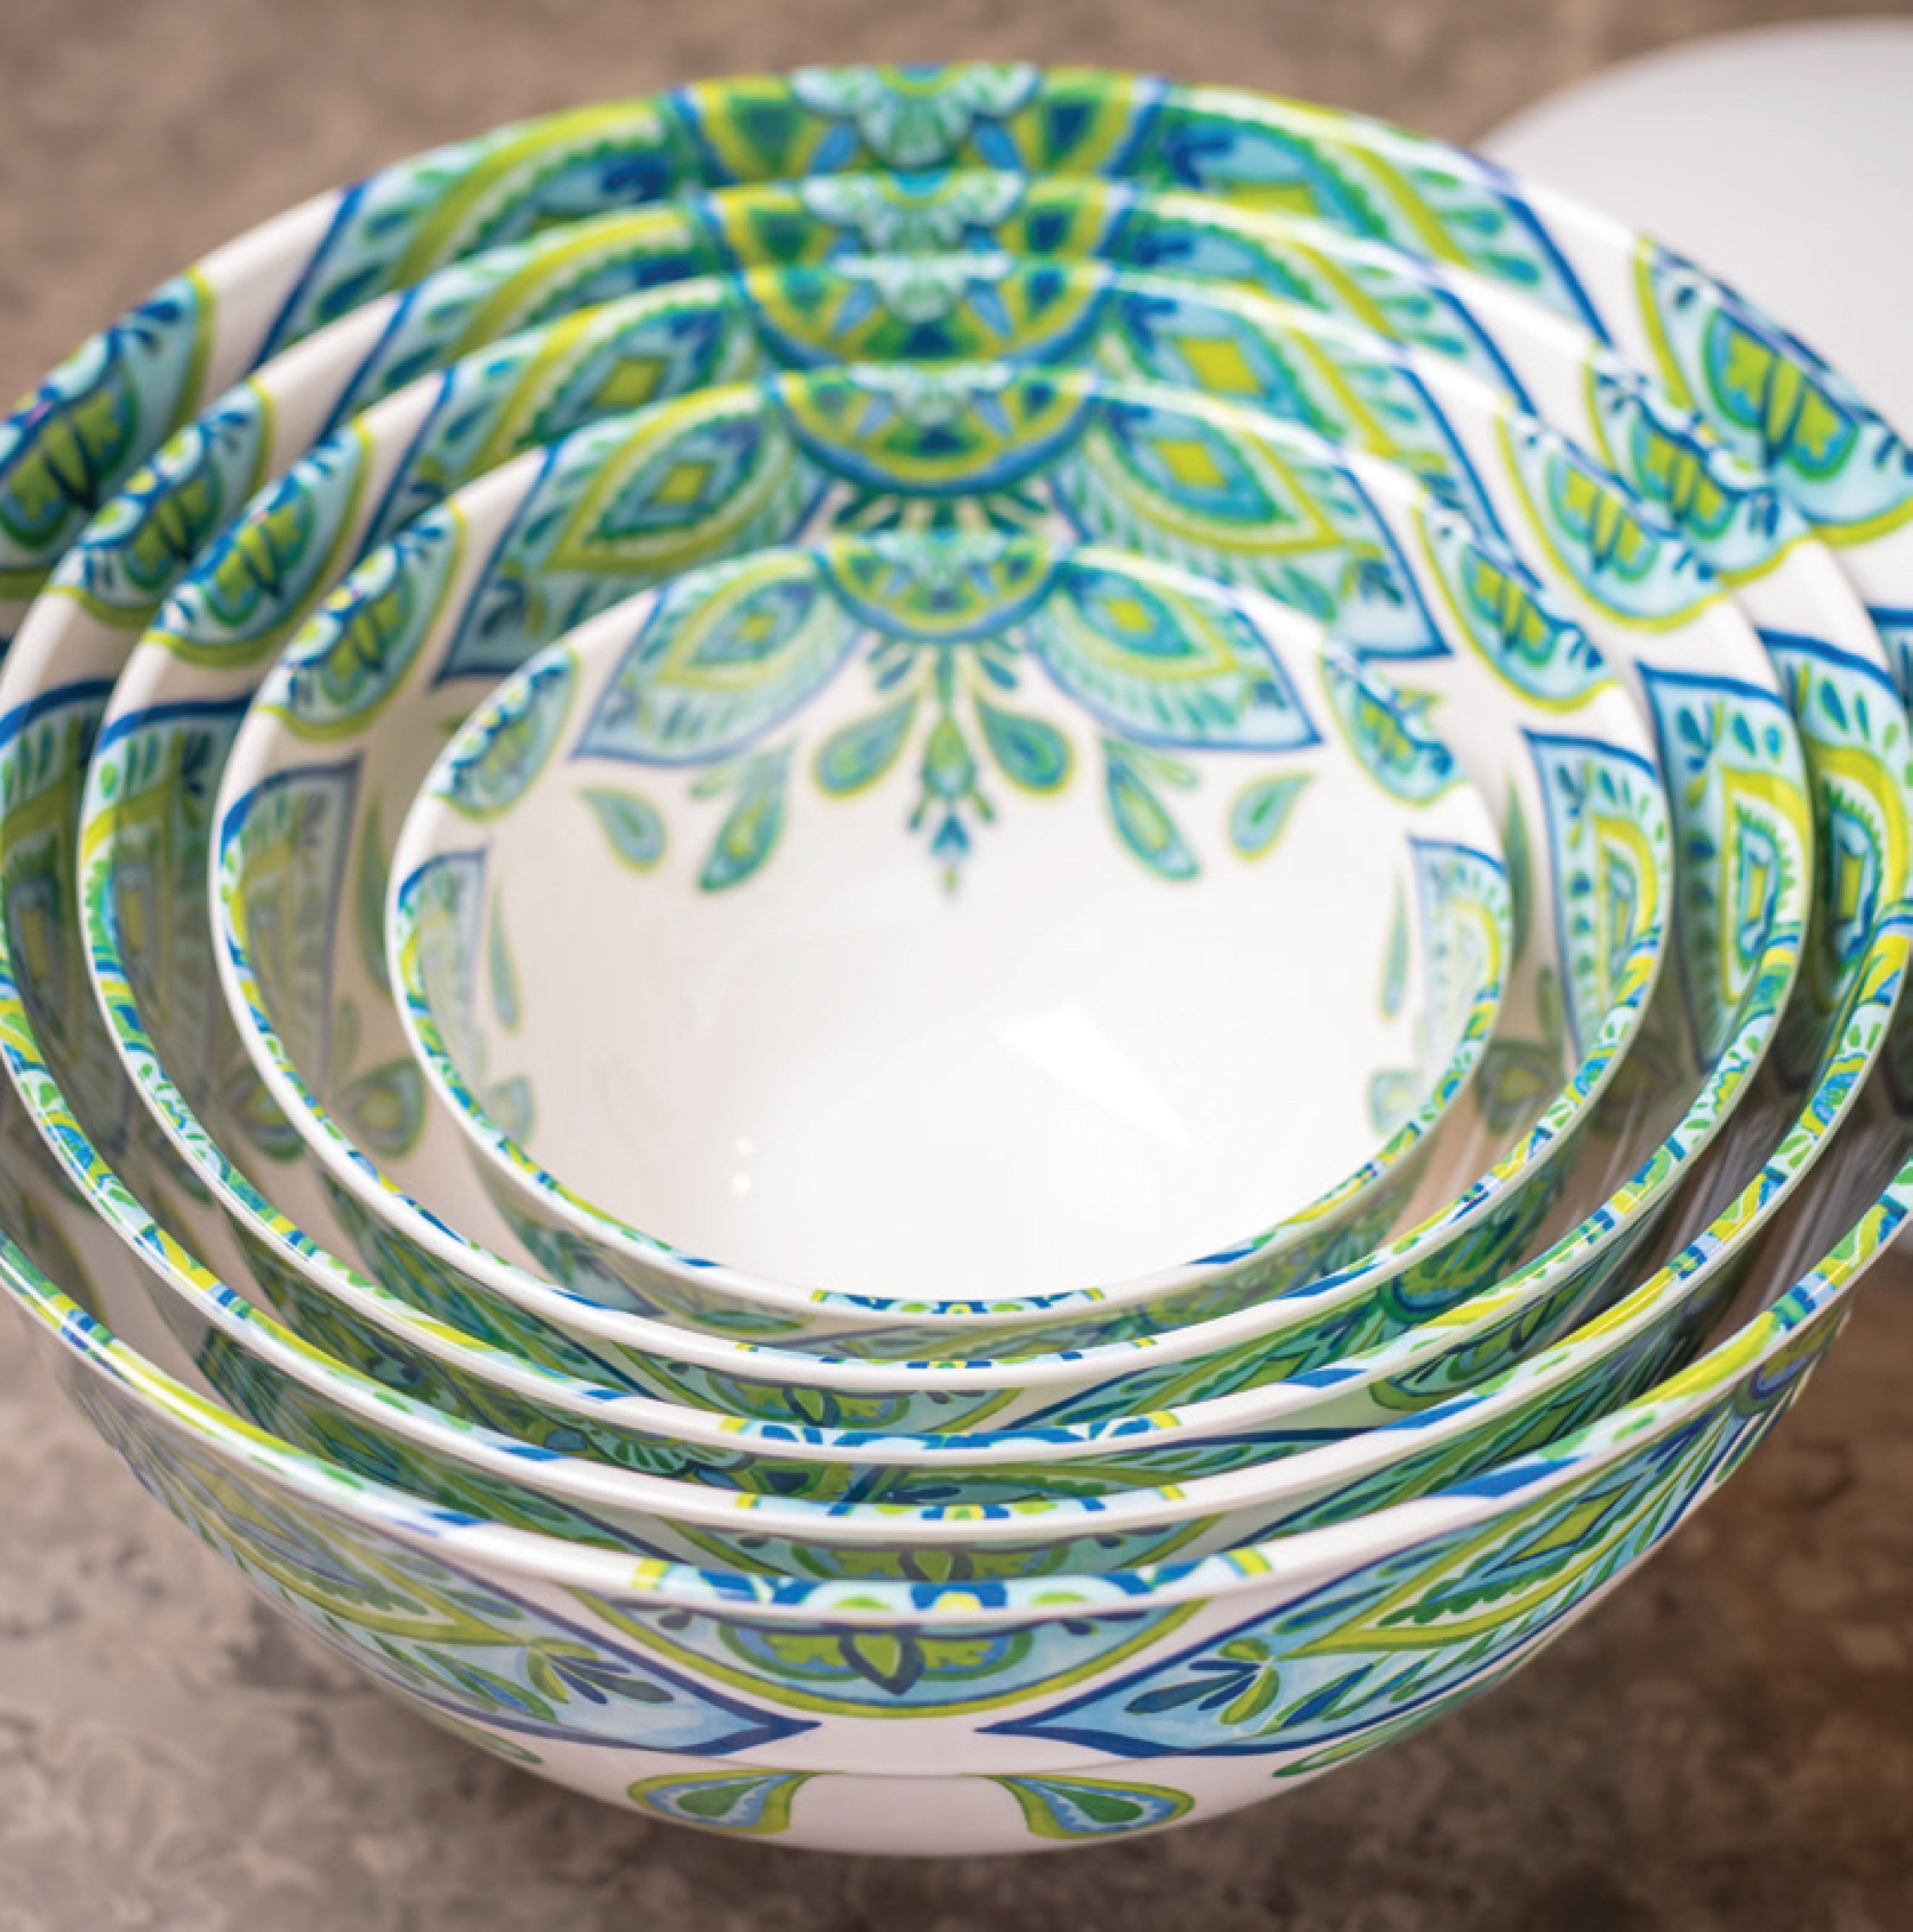 10-Piece Melamine Mixing Bowls with Lids Cortez Medallion, Size: 0.88